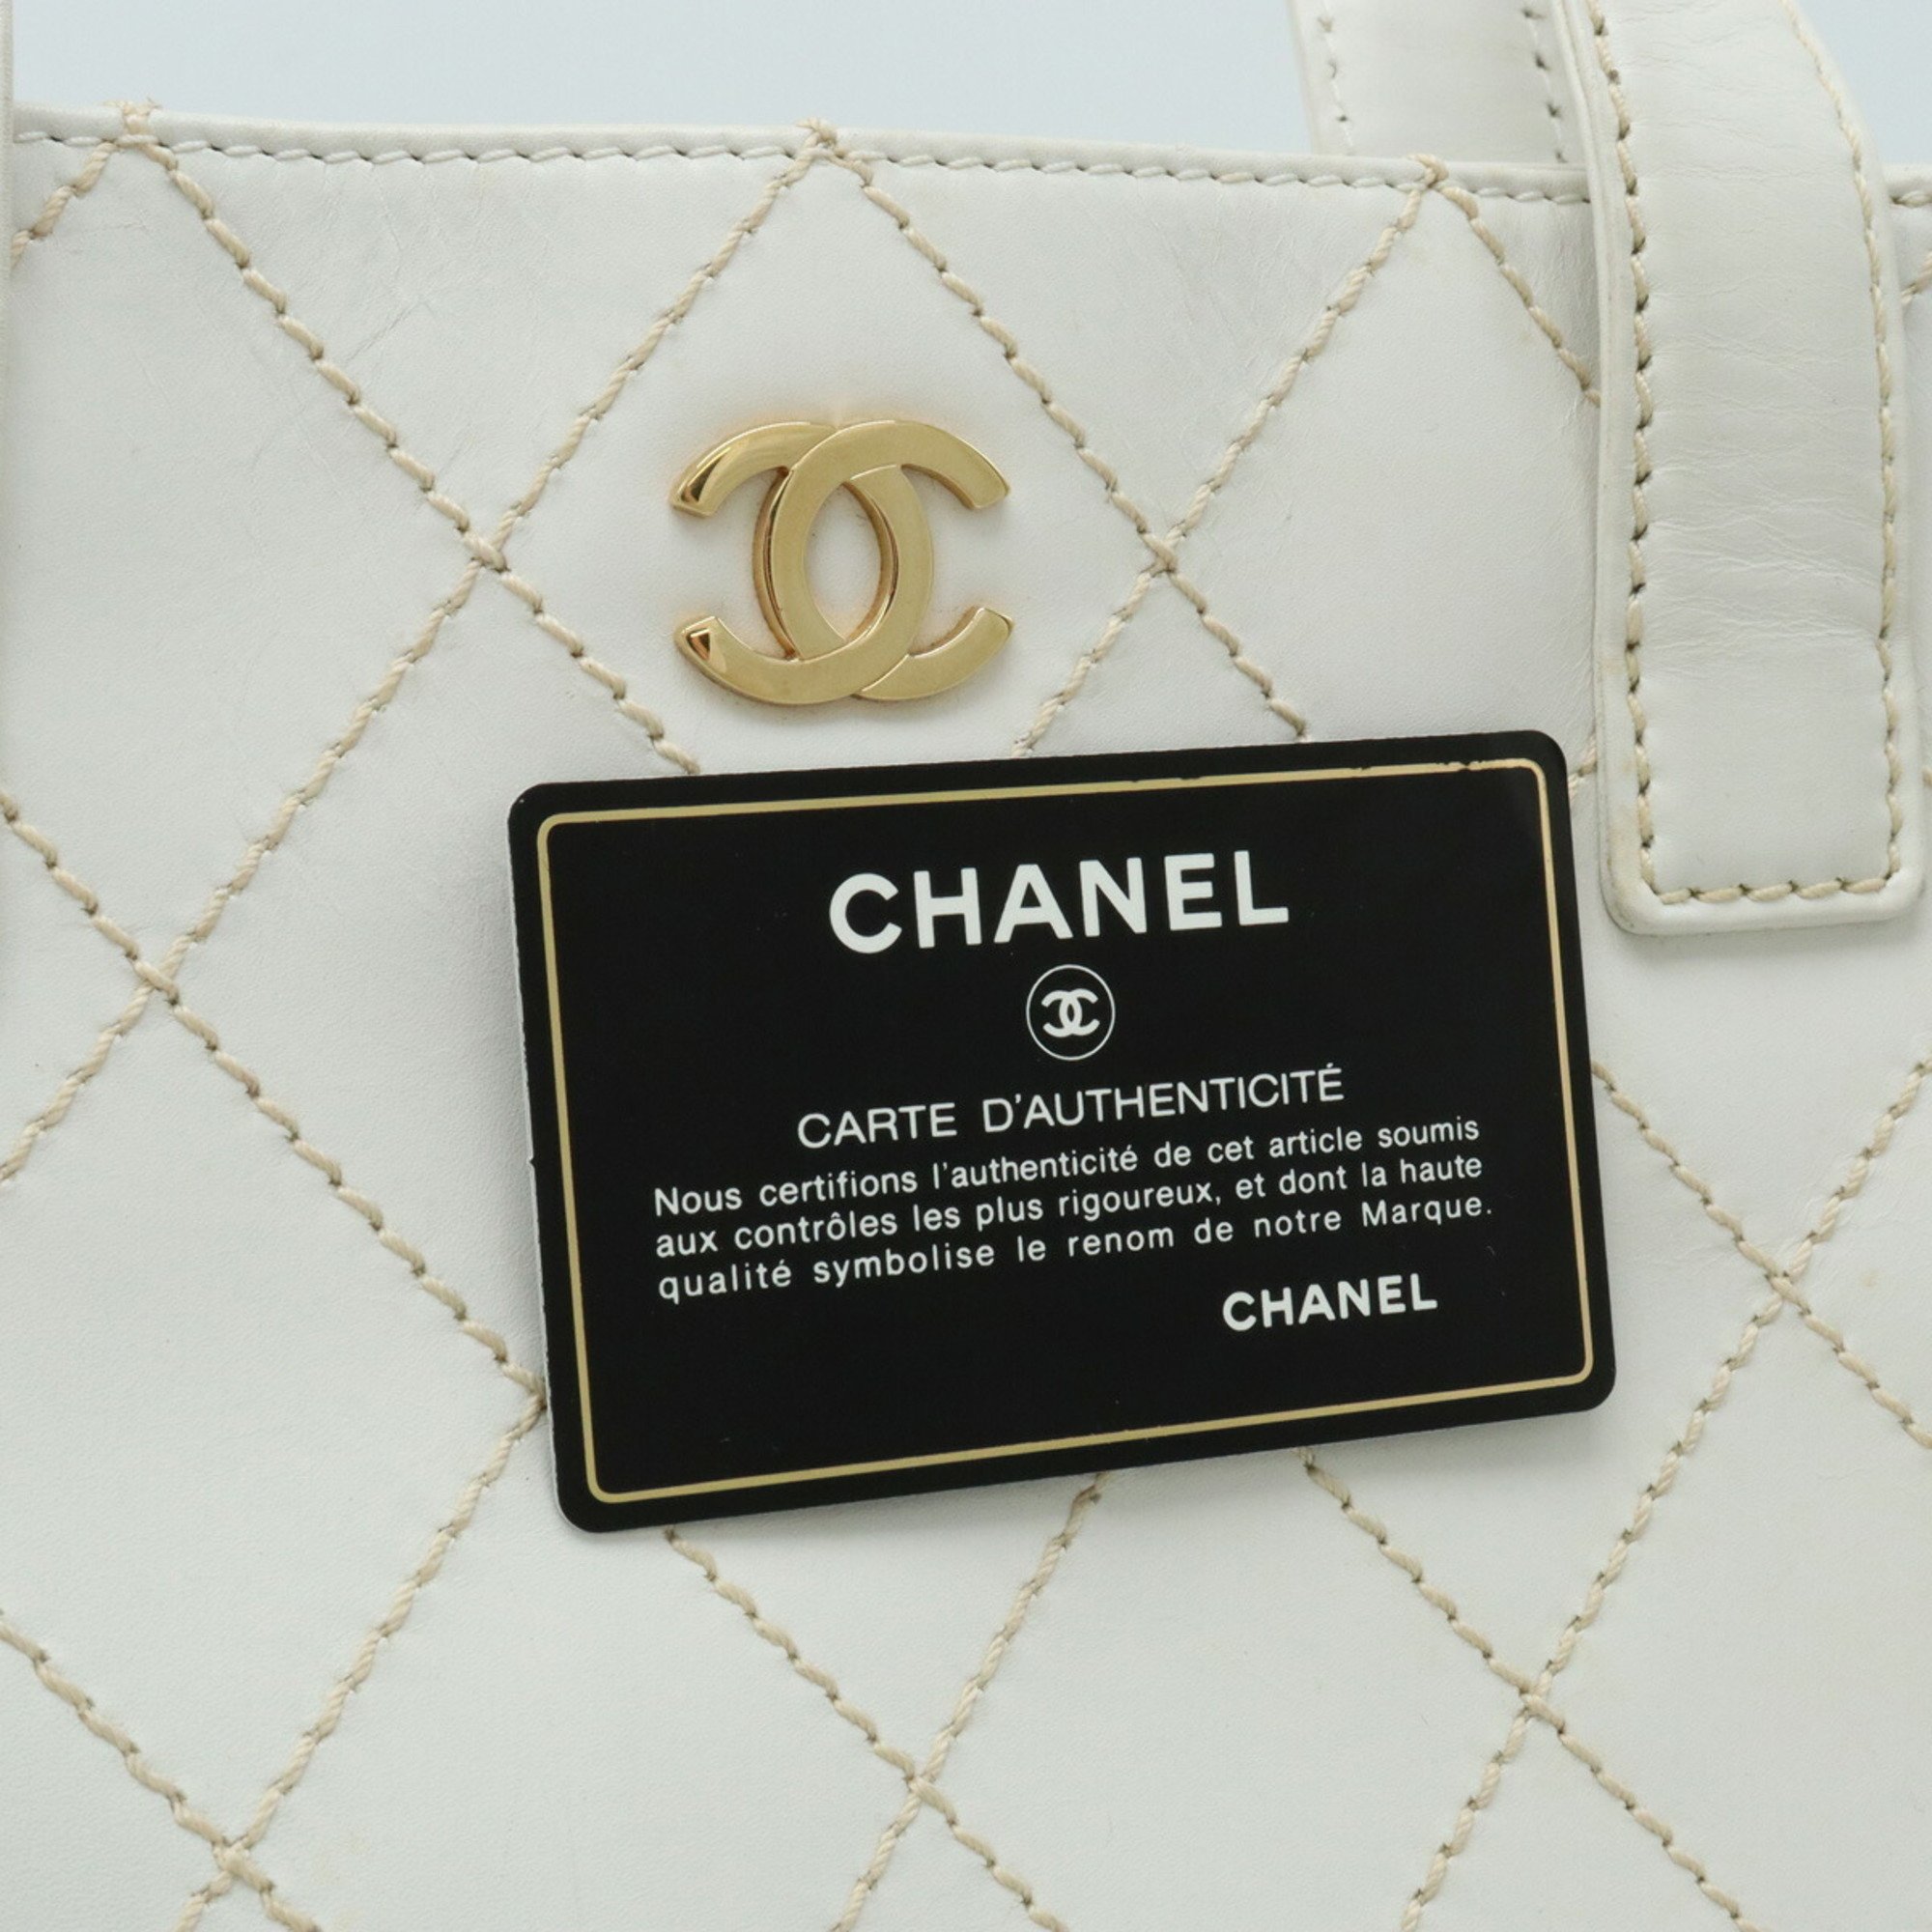 CHANEL Wild Stitch Coco Mark Tote Bag Handbag Leather White A18126